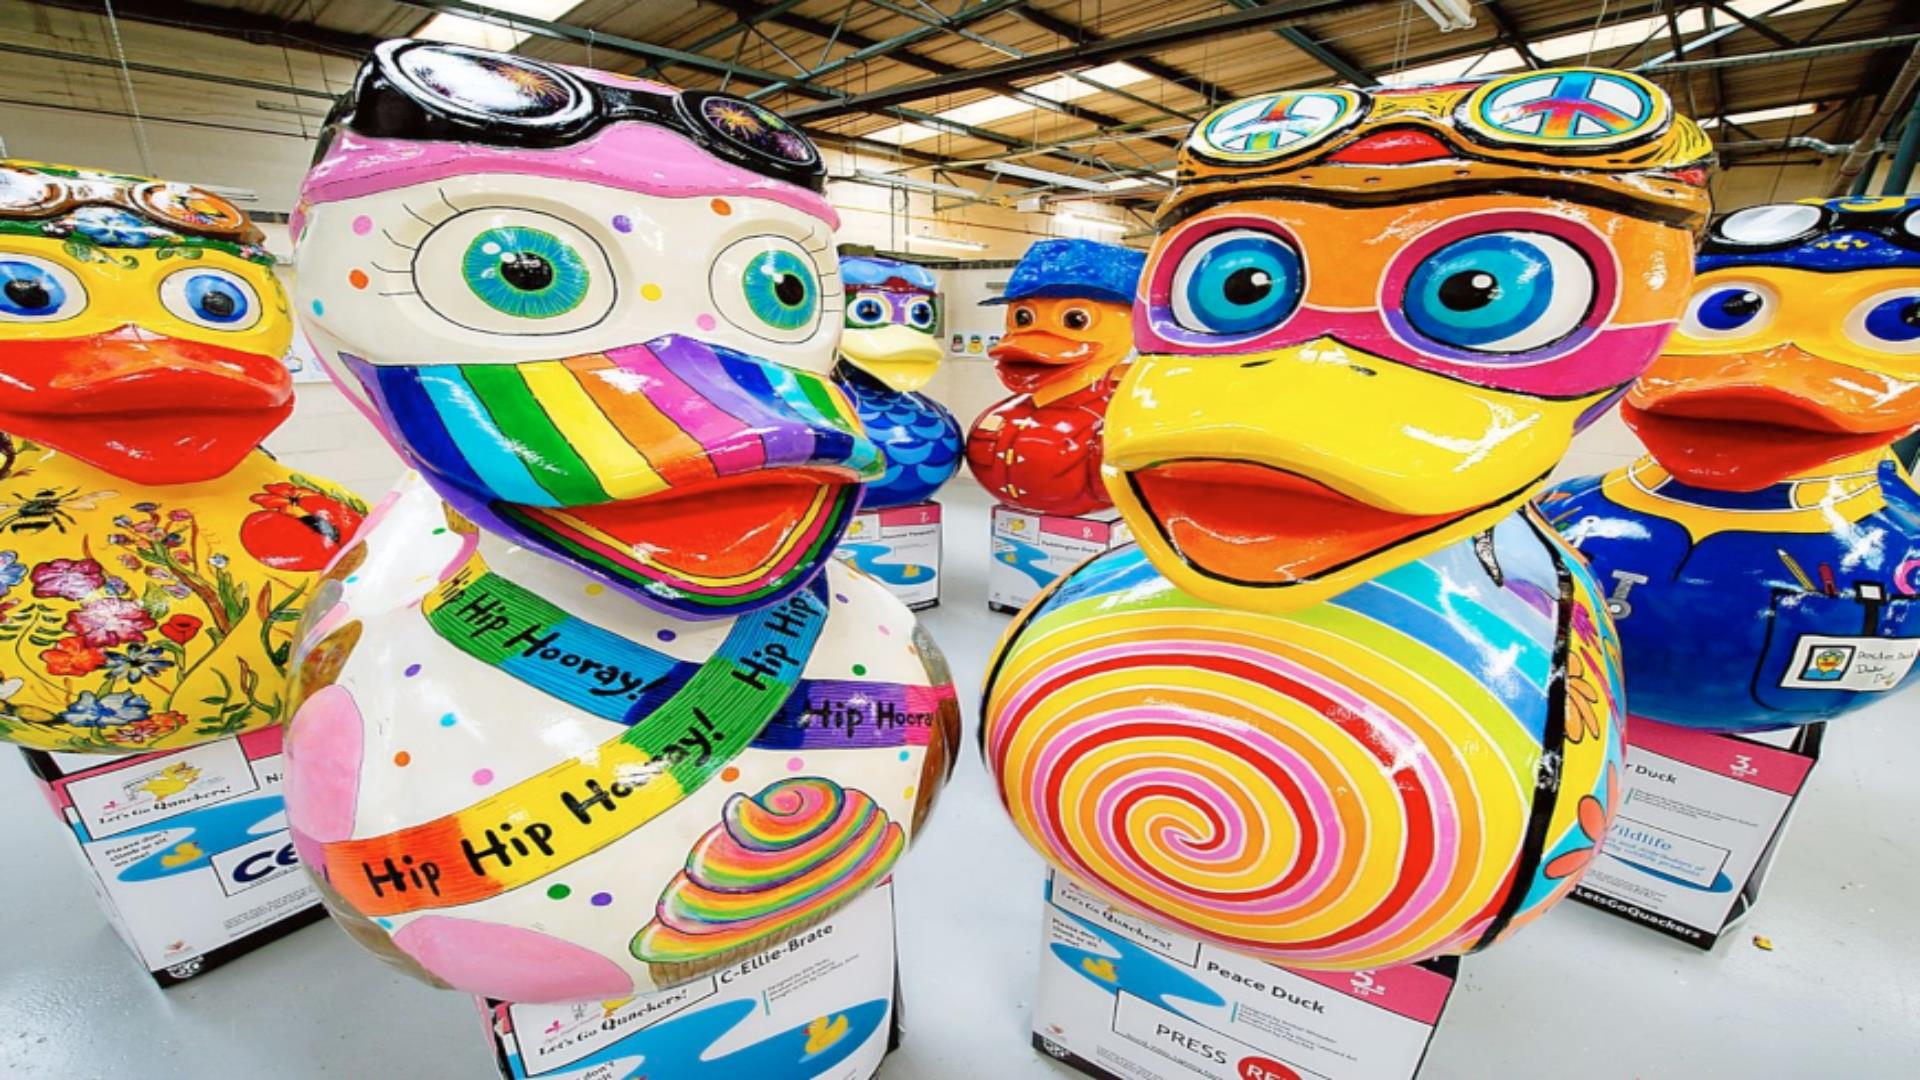 Large decorative duck sculptures